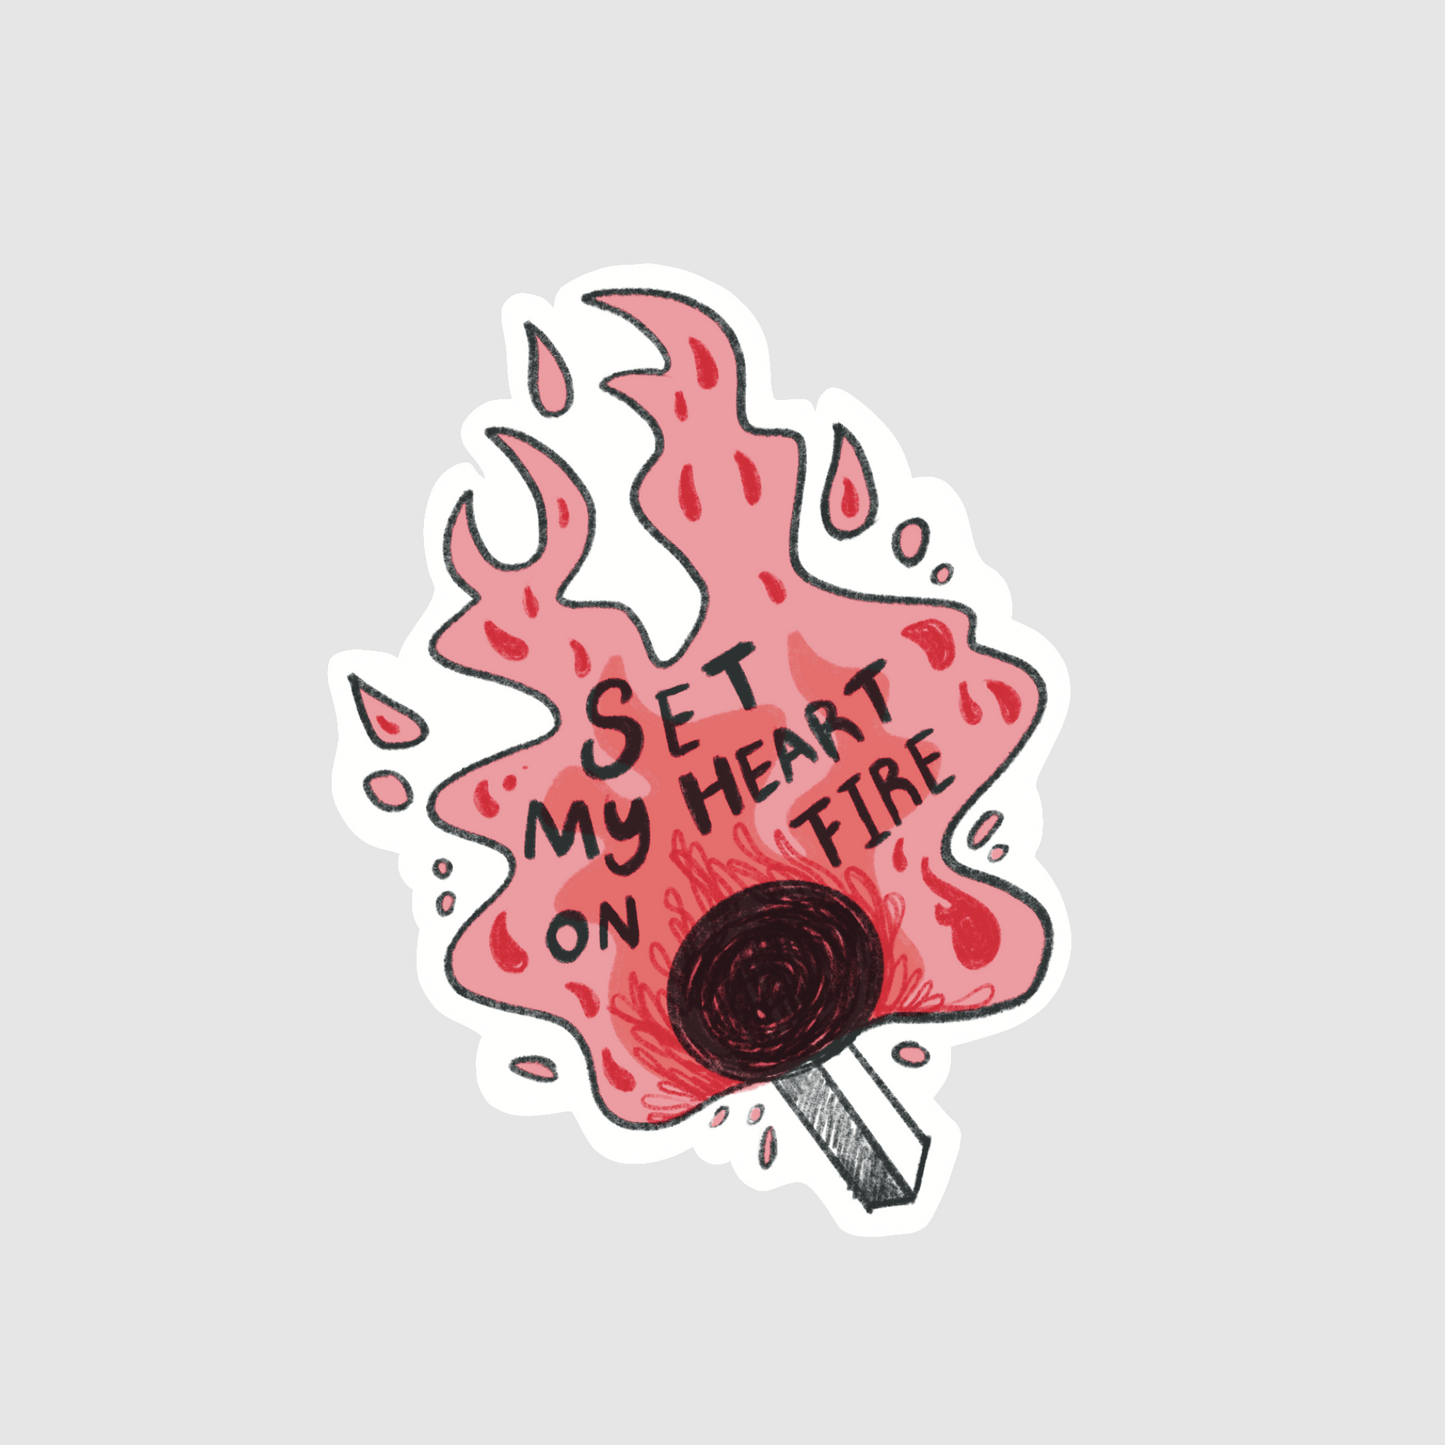 Match - set my heart on fire sticker